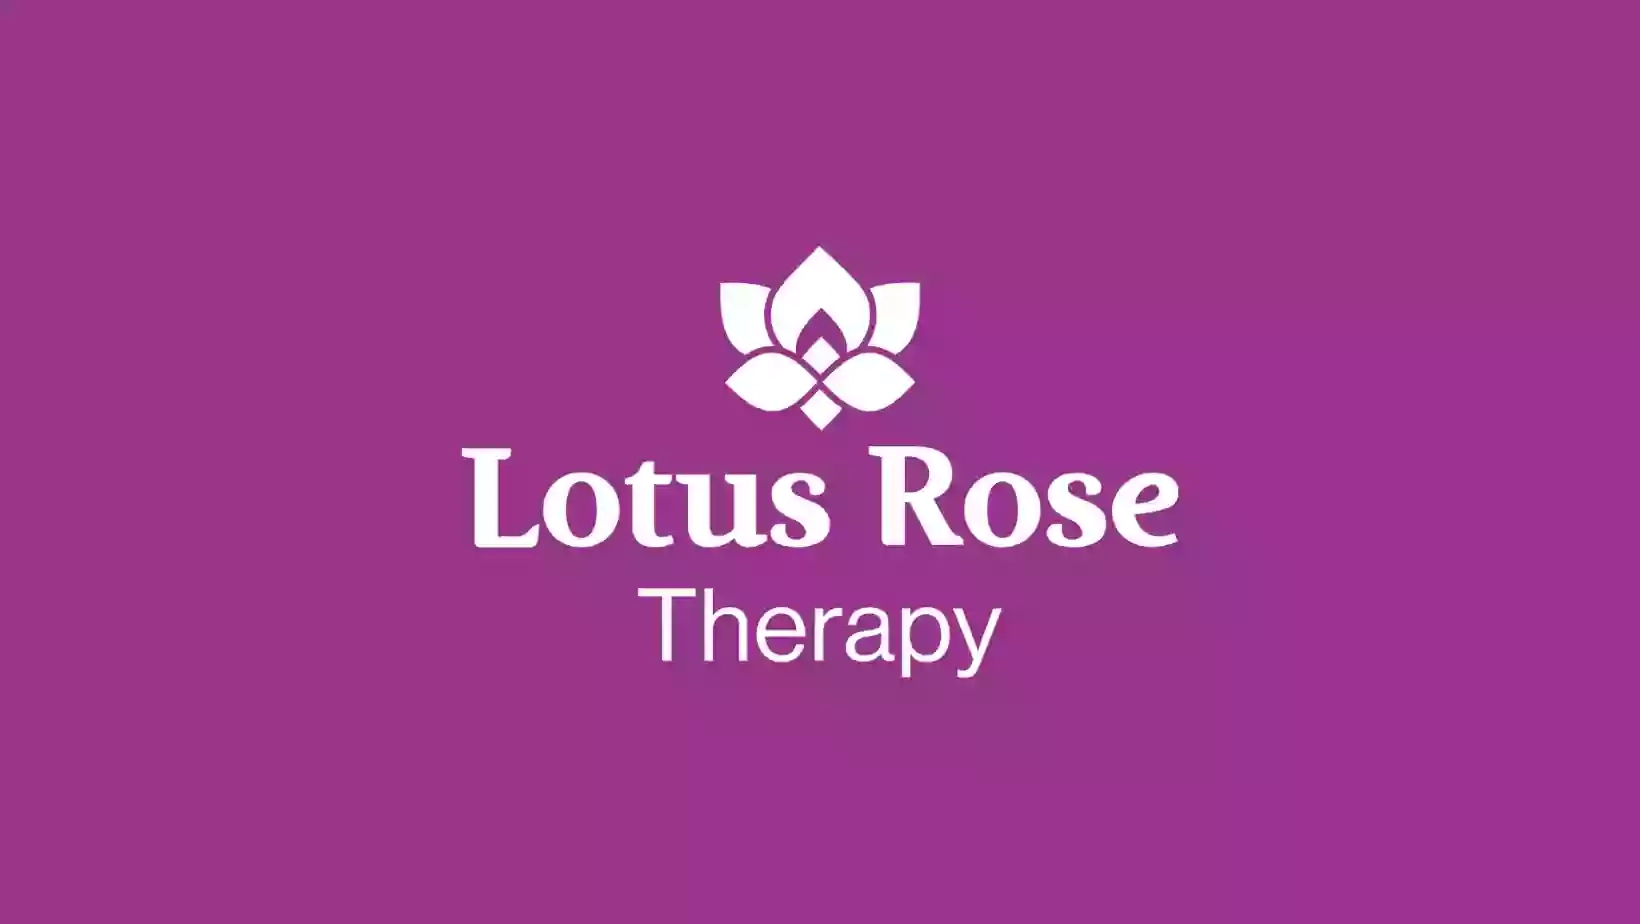 Lotus Rose Therapy